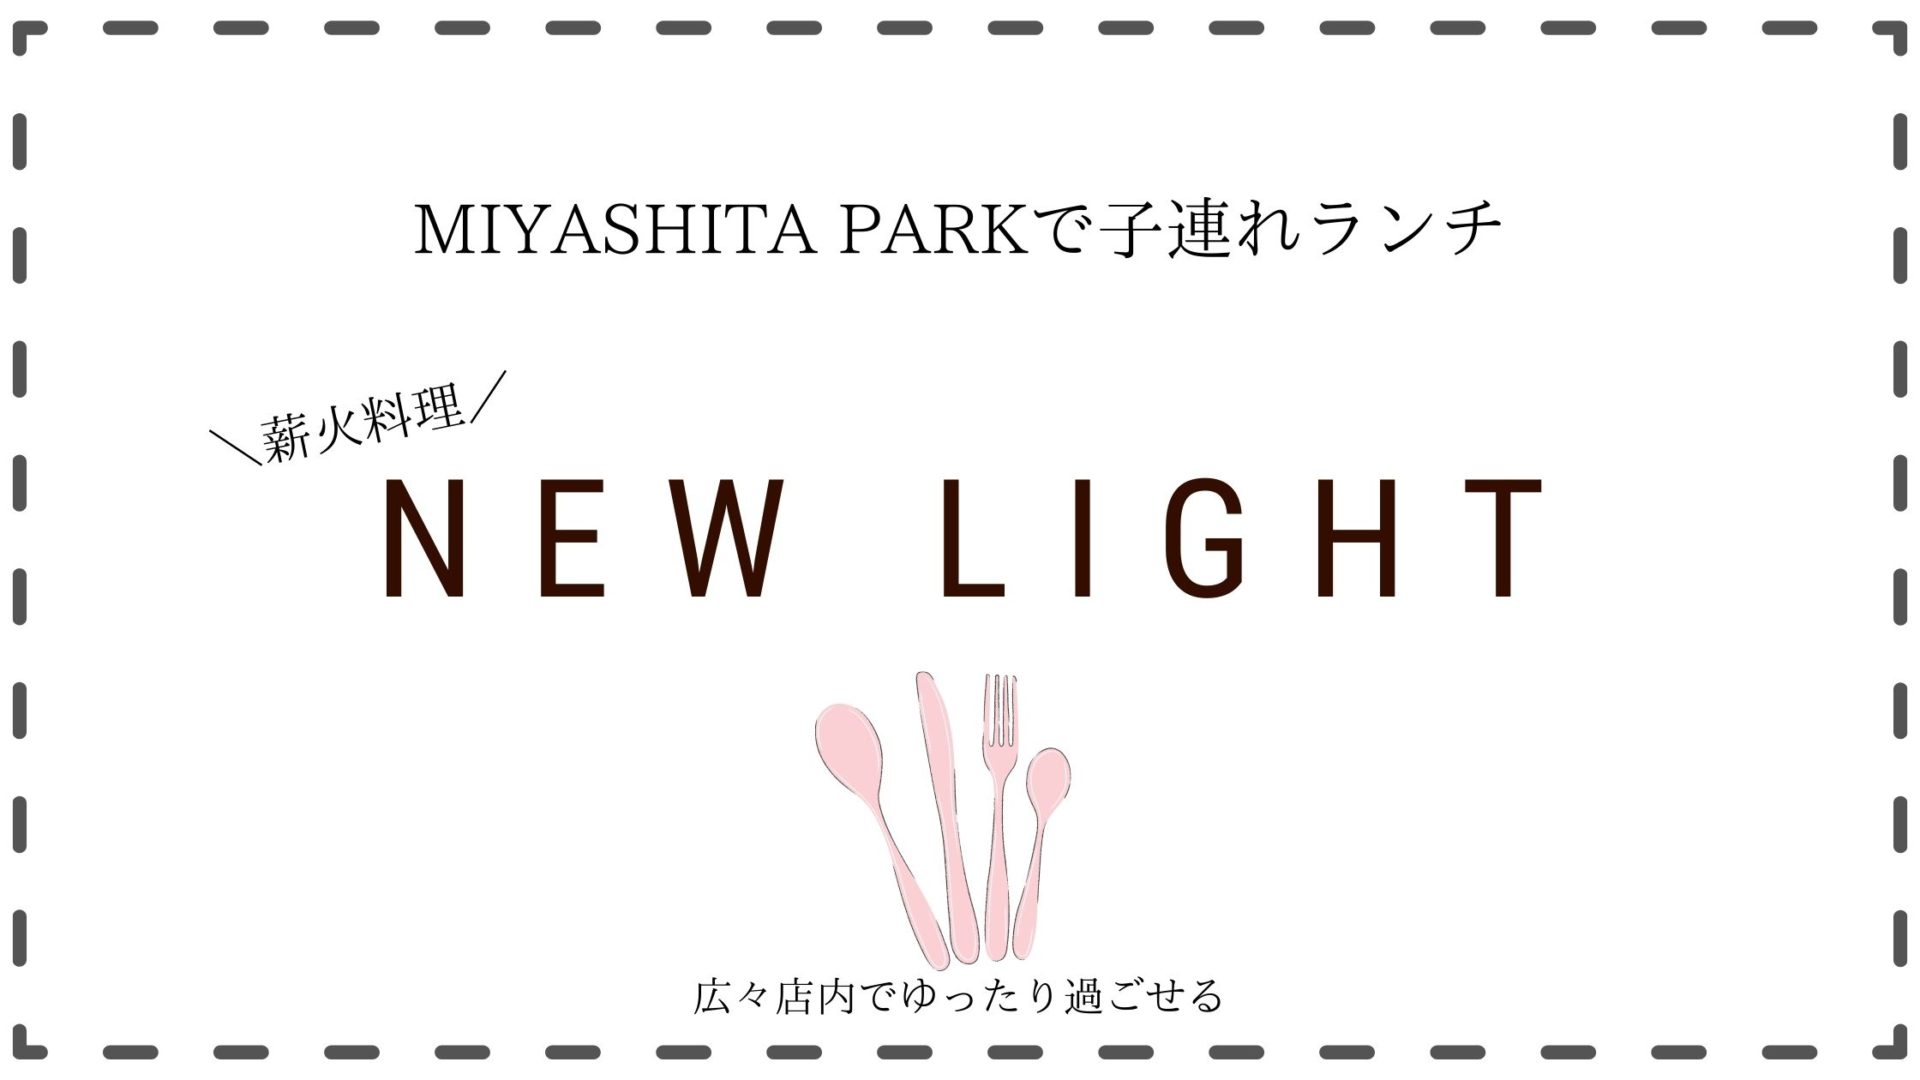 NEW LIGHT